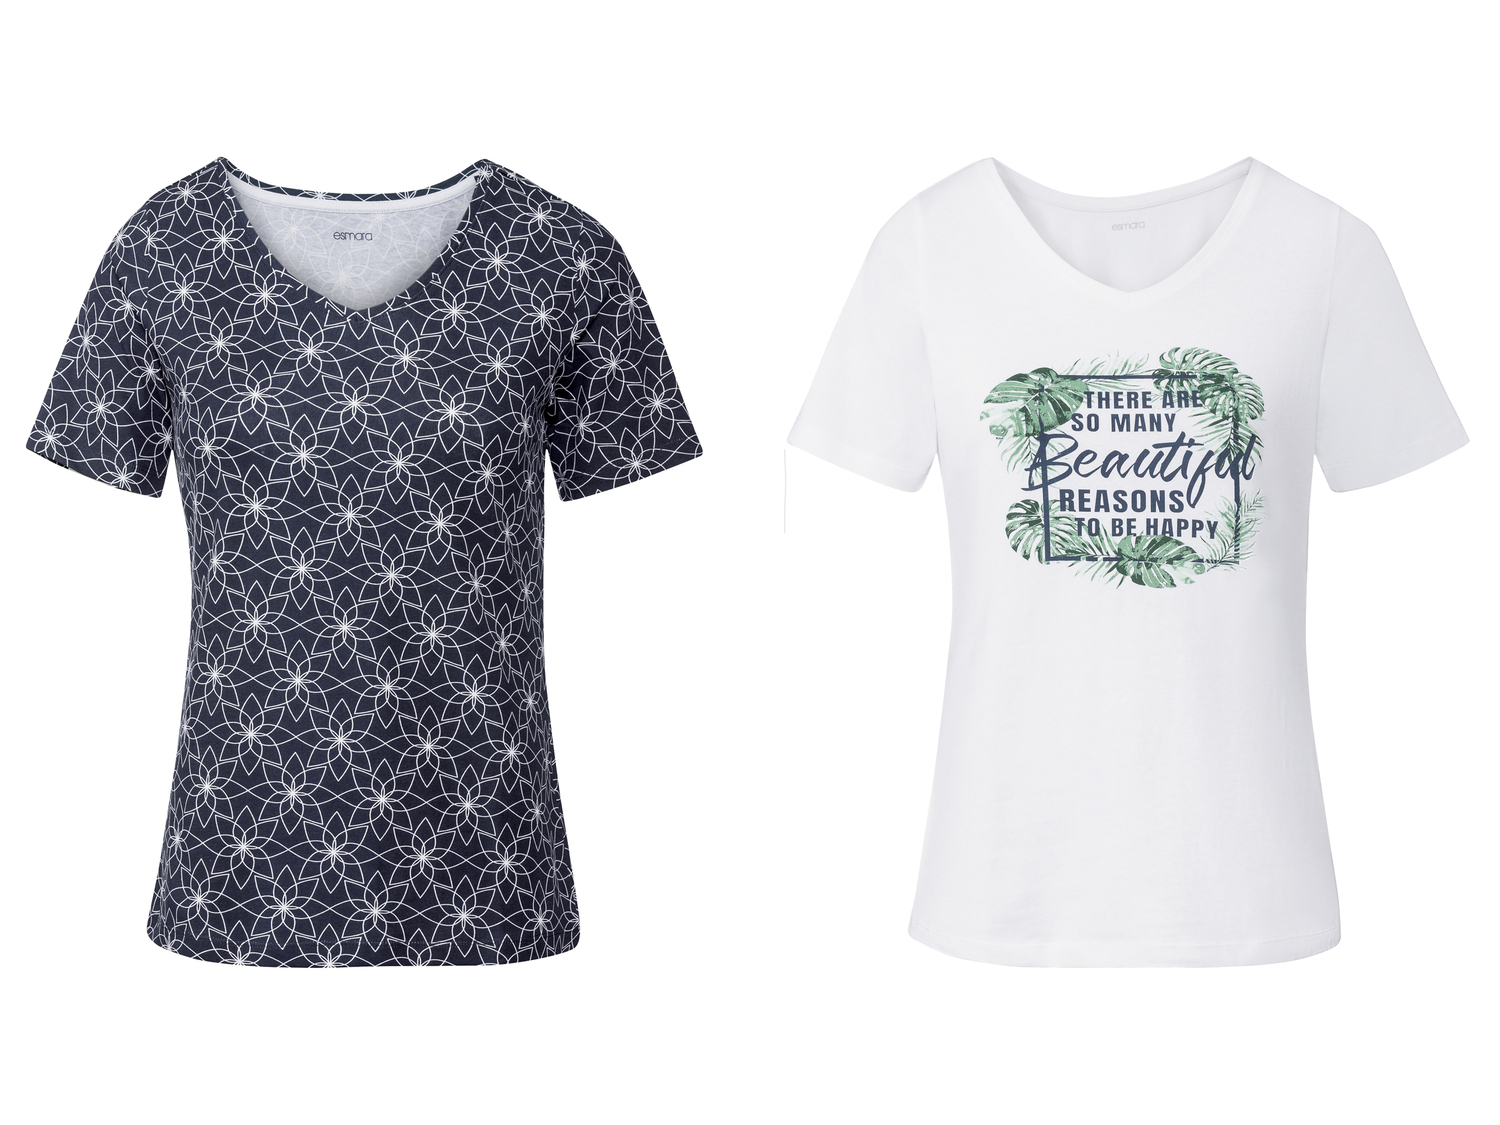 T-Shirt da donna Esmara, prezzo 6.99 &#8364; 
2 pezzi - Misure: S-XL
Taglie ...